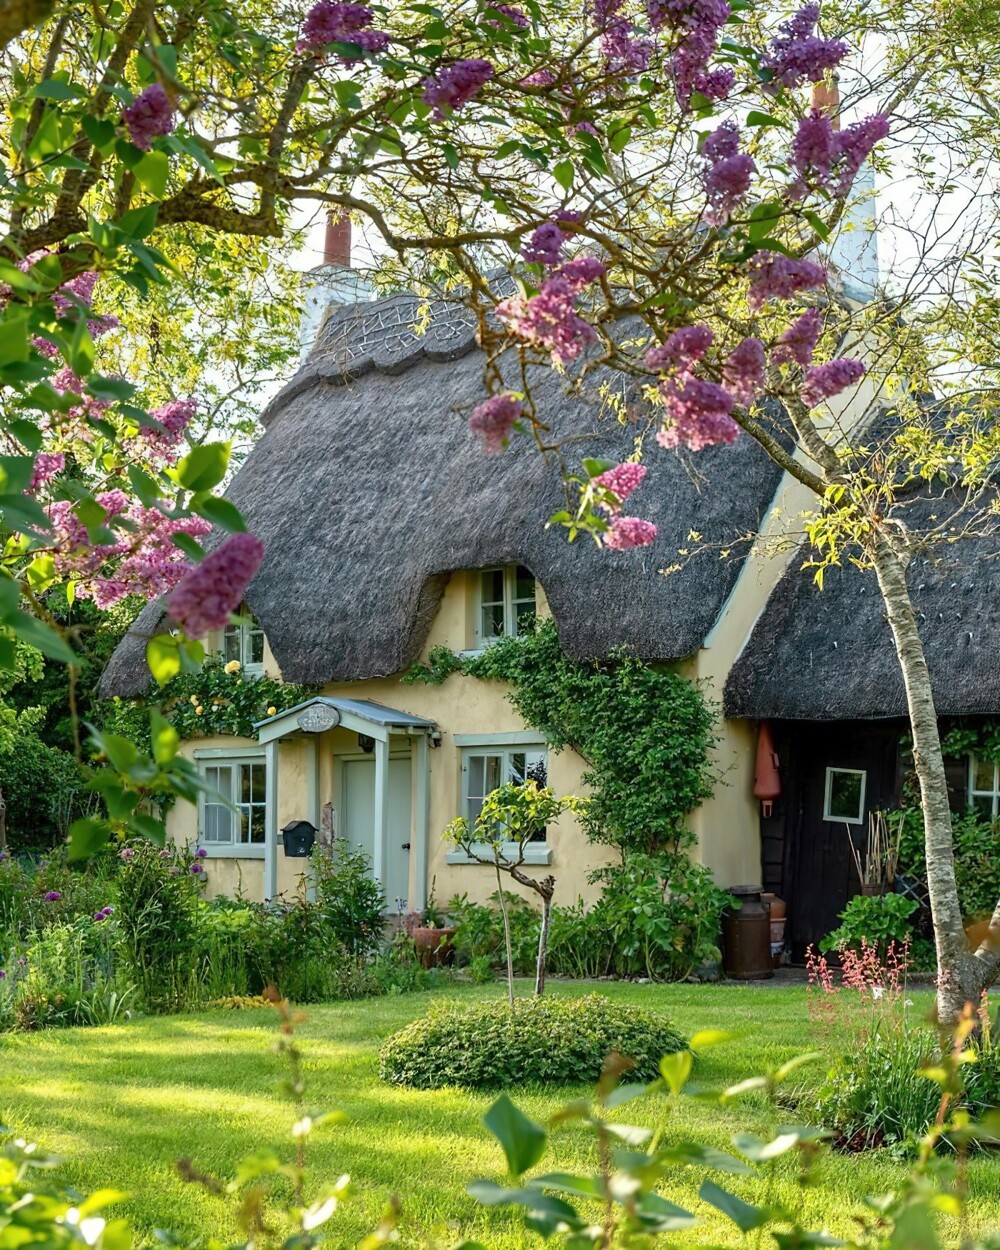 17. Rose Cottage, коттедж 18-го века с соломенной крышей в маленькой деревне Хонингтон, округ Стратфорд-на-Эйвоне, Уорикшир, Англия